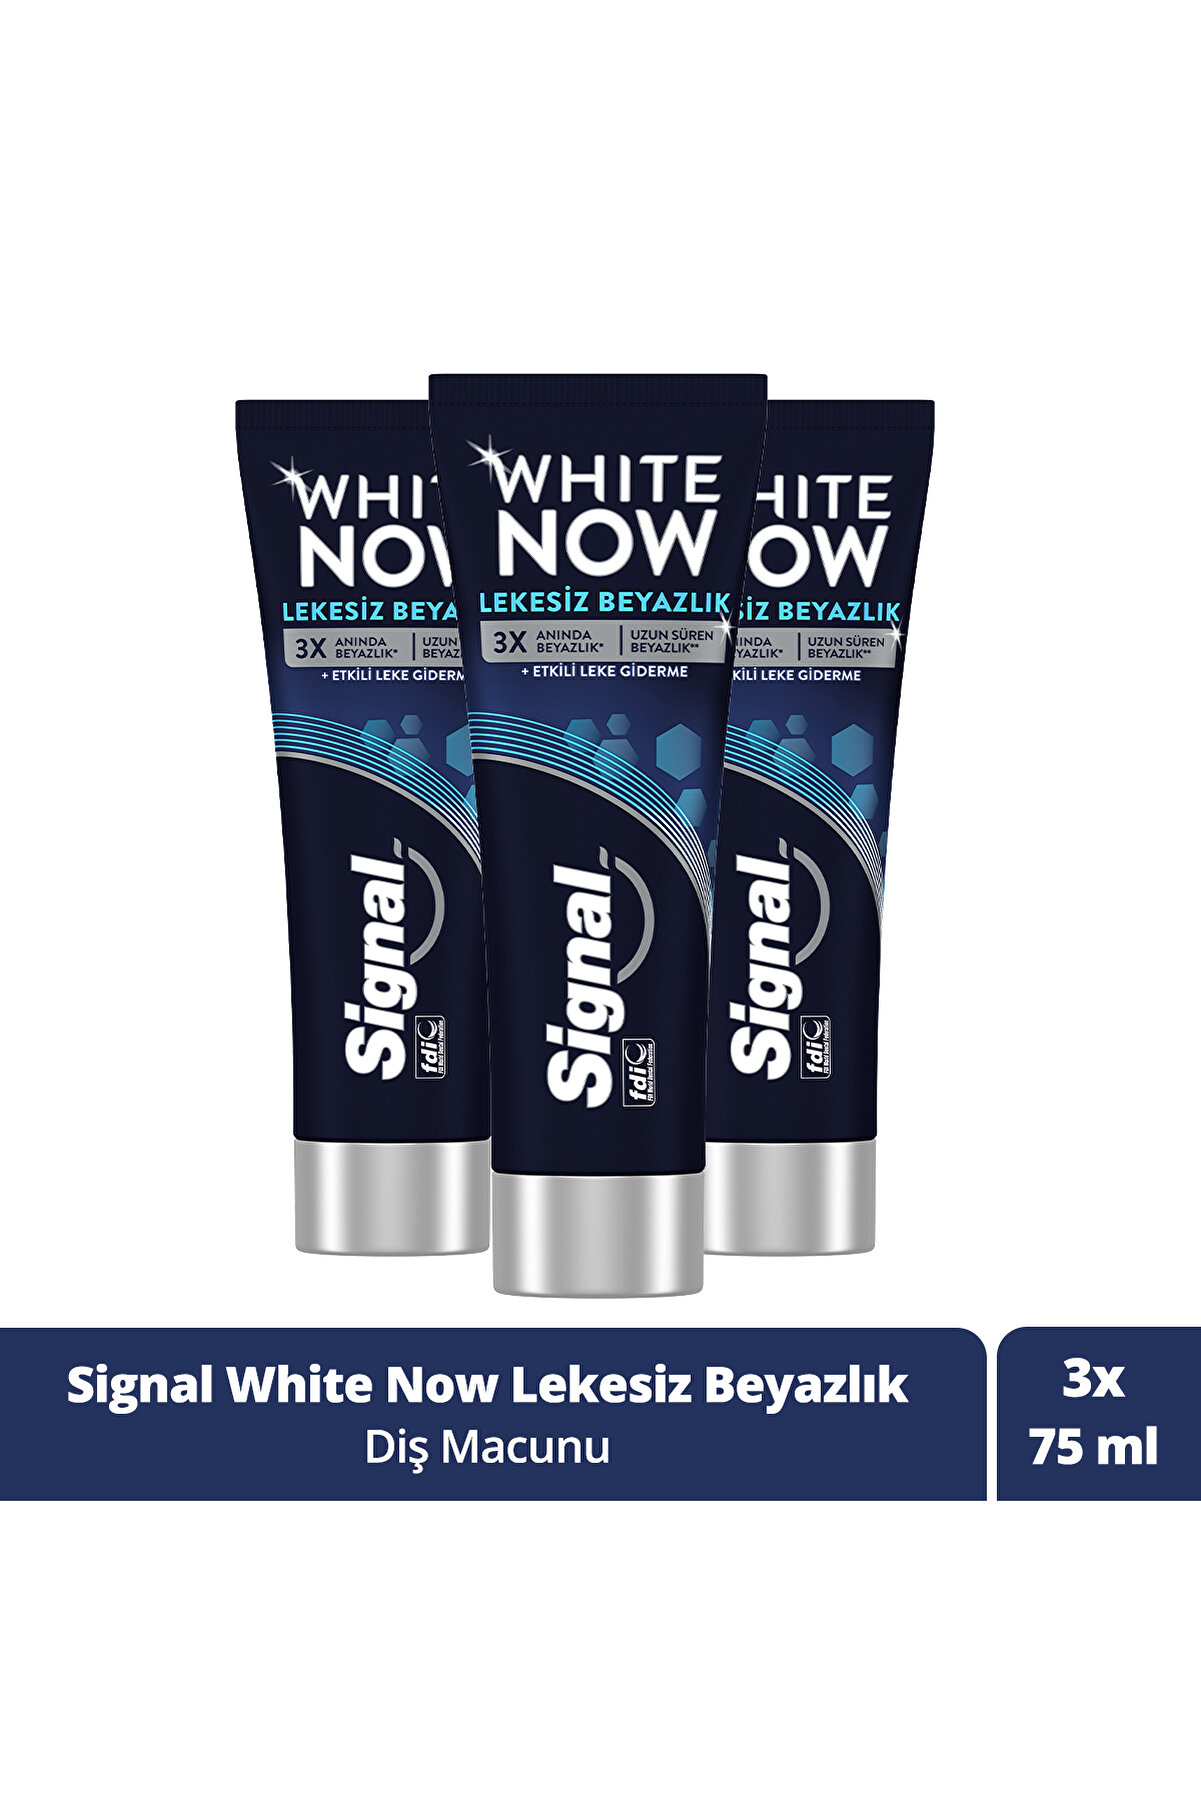 Signal White Now Leke Karşıtı Kahve Ve Sigara Içenler Için Beyazlatıcı Diş Macunu 75ml X3